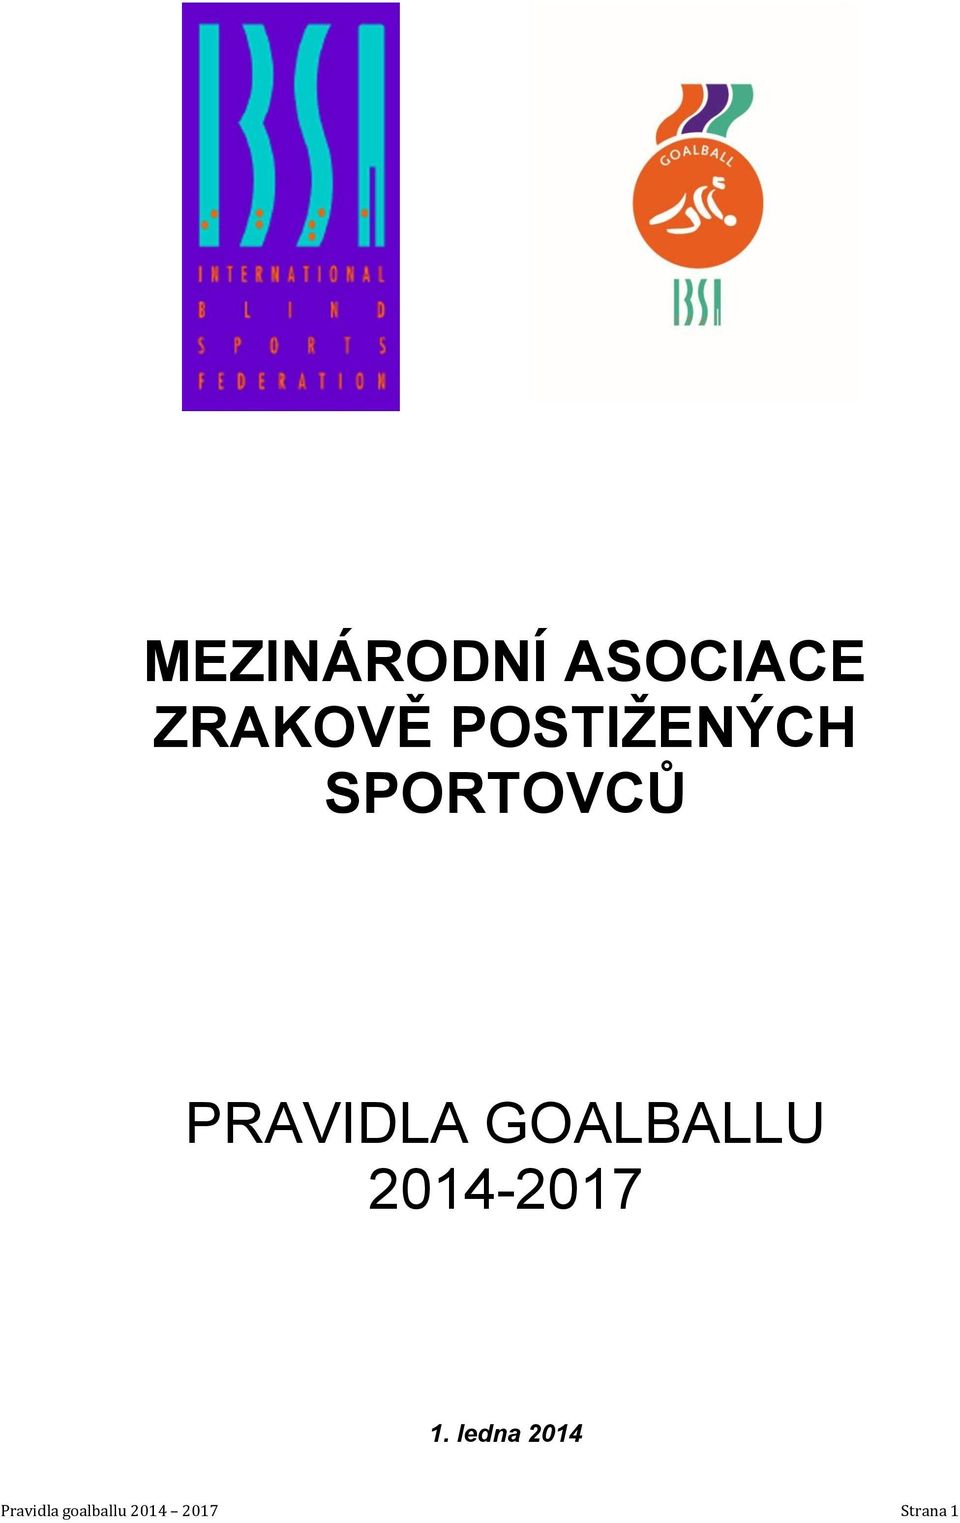 GOALBALLU 2014-2017 1.